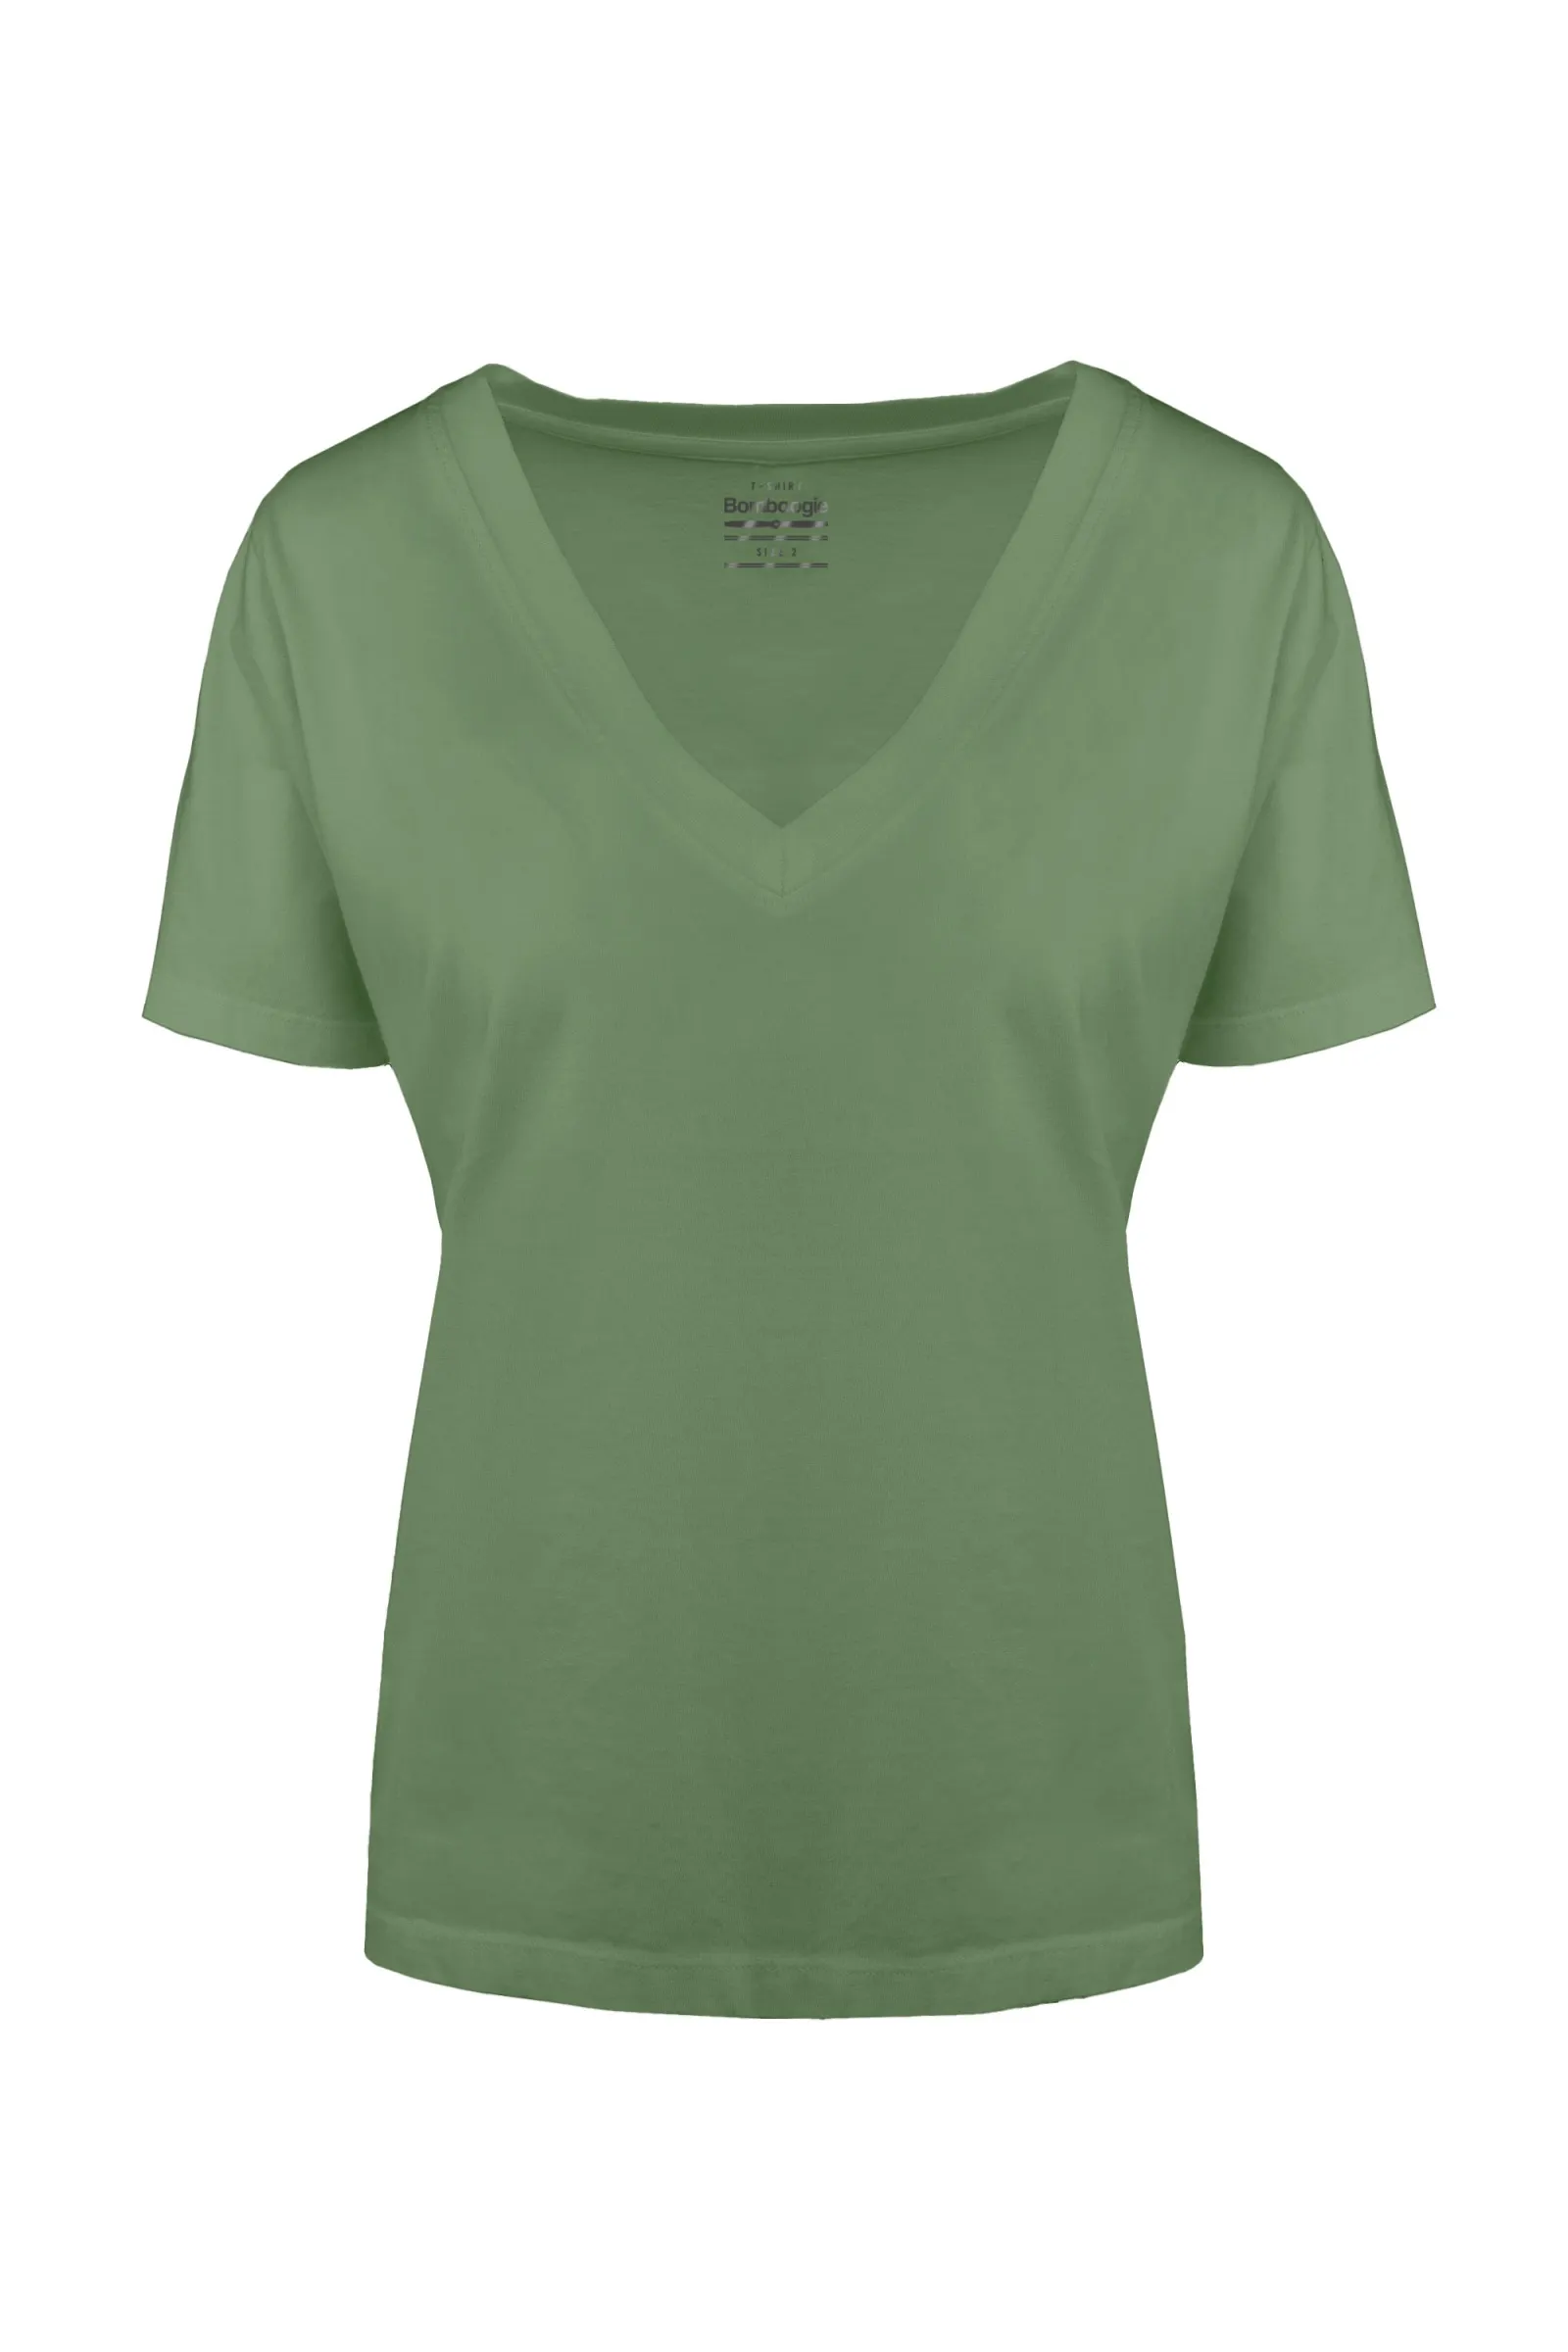 Bomboogie T-shirt da donna con scollo a V in cotone organico TW7359TJORI 305 wasabi green